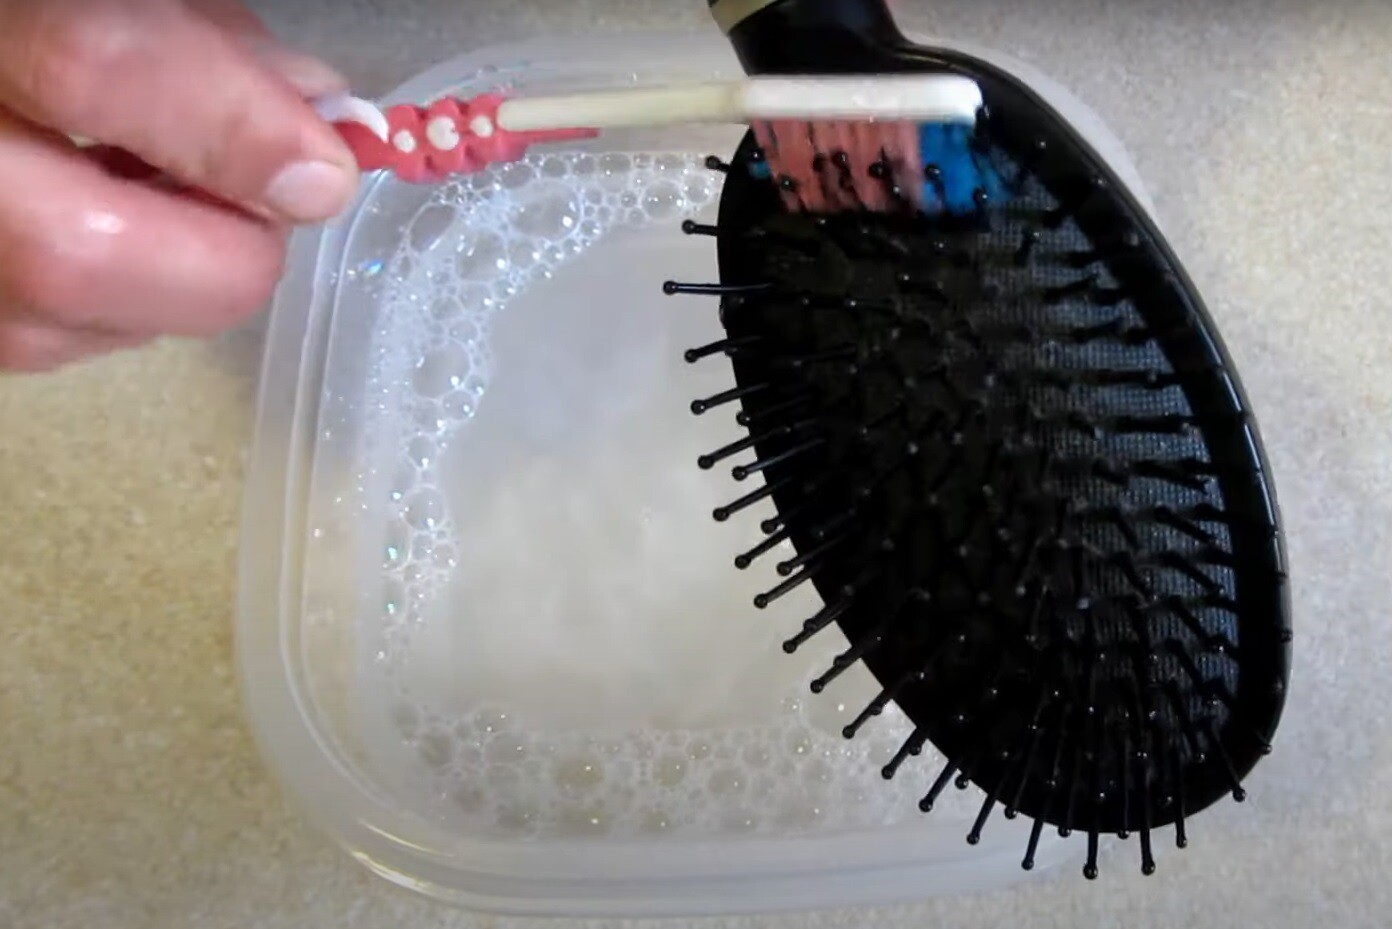 Як почистити гребінець. Фото: скріншот з YouTube / Поради для будинку 